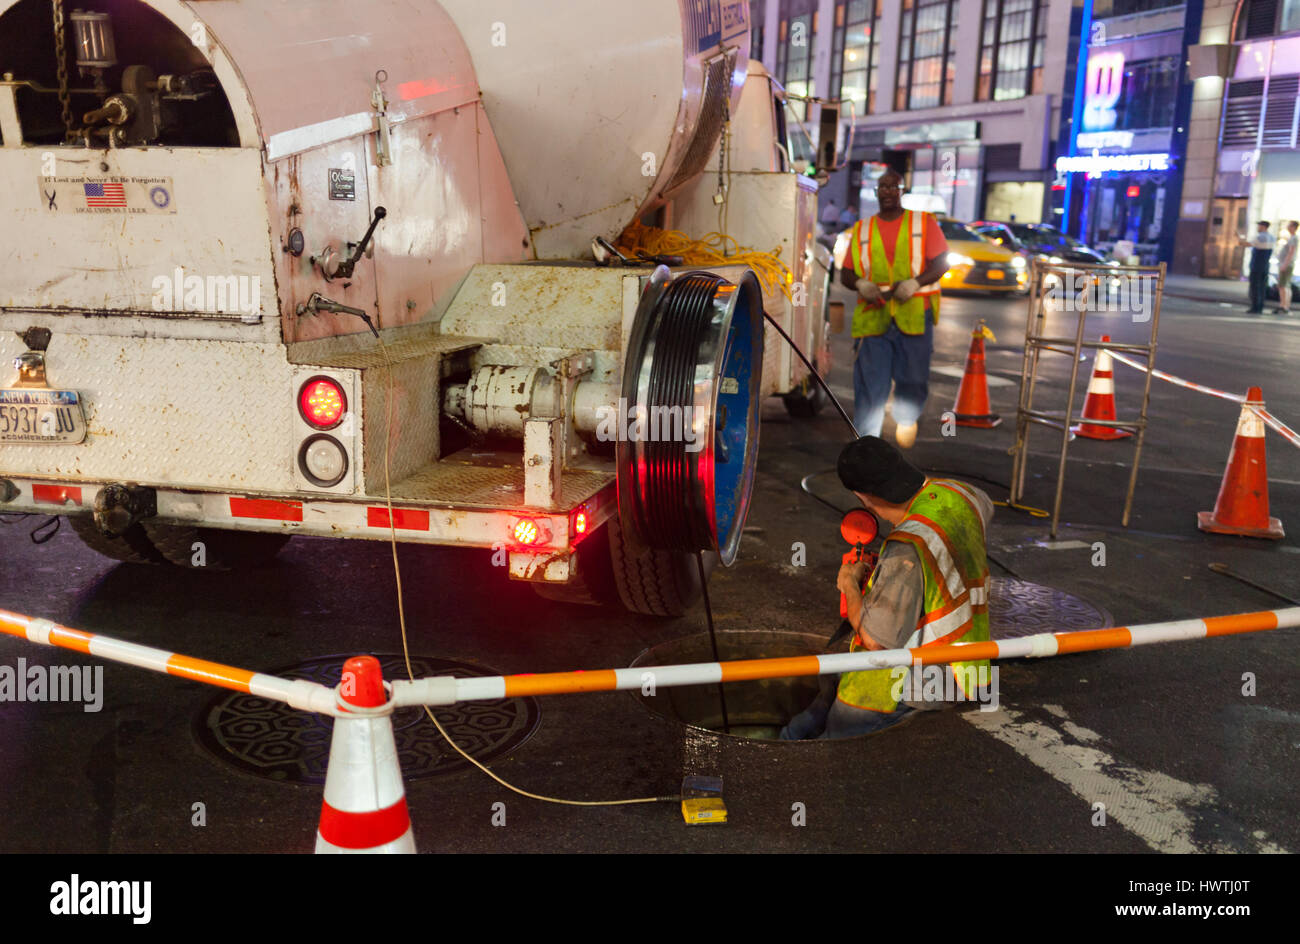 La città di New York, Stati Uniti d'America - Luglio 12, 2015: operai al lavoro in un tombino in Manhattan di notte. La grande città necessita di frequenti interventi di manutenzione. Foto Stock